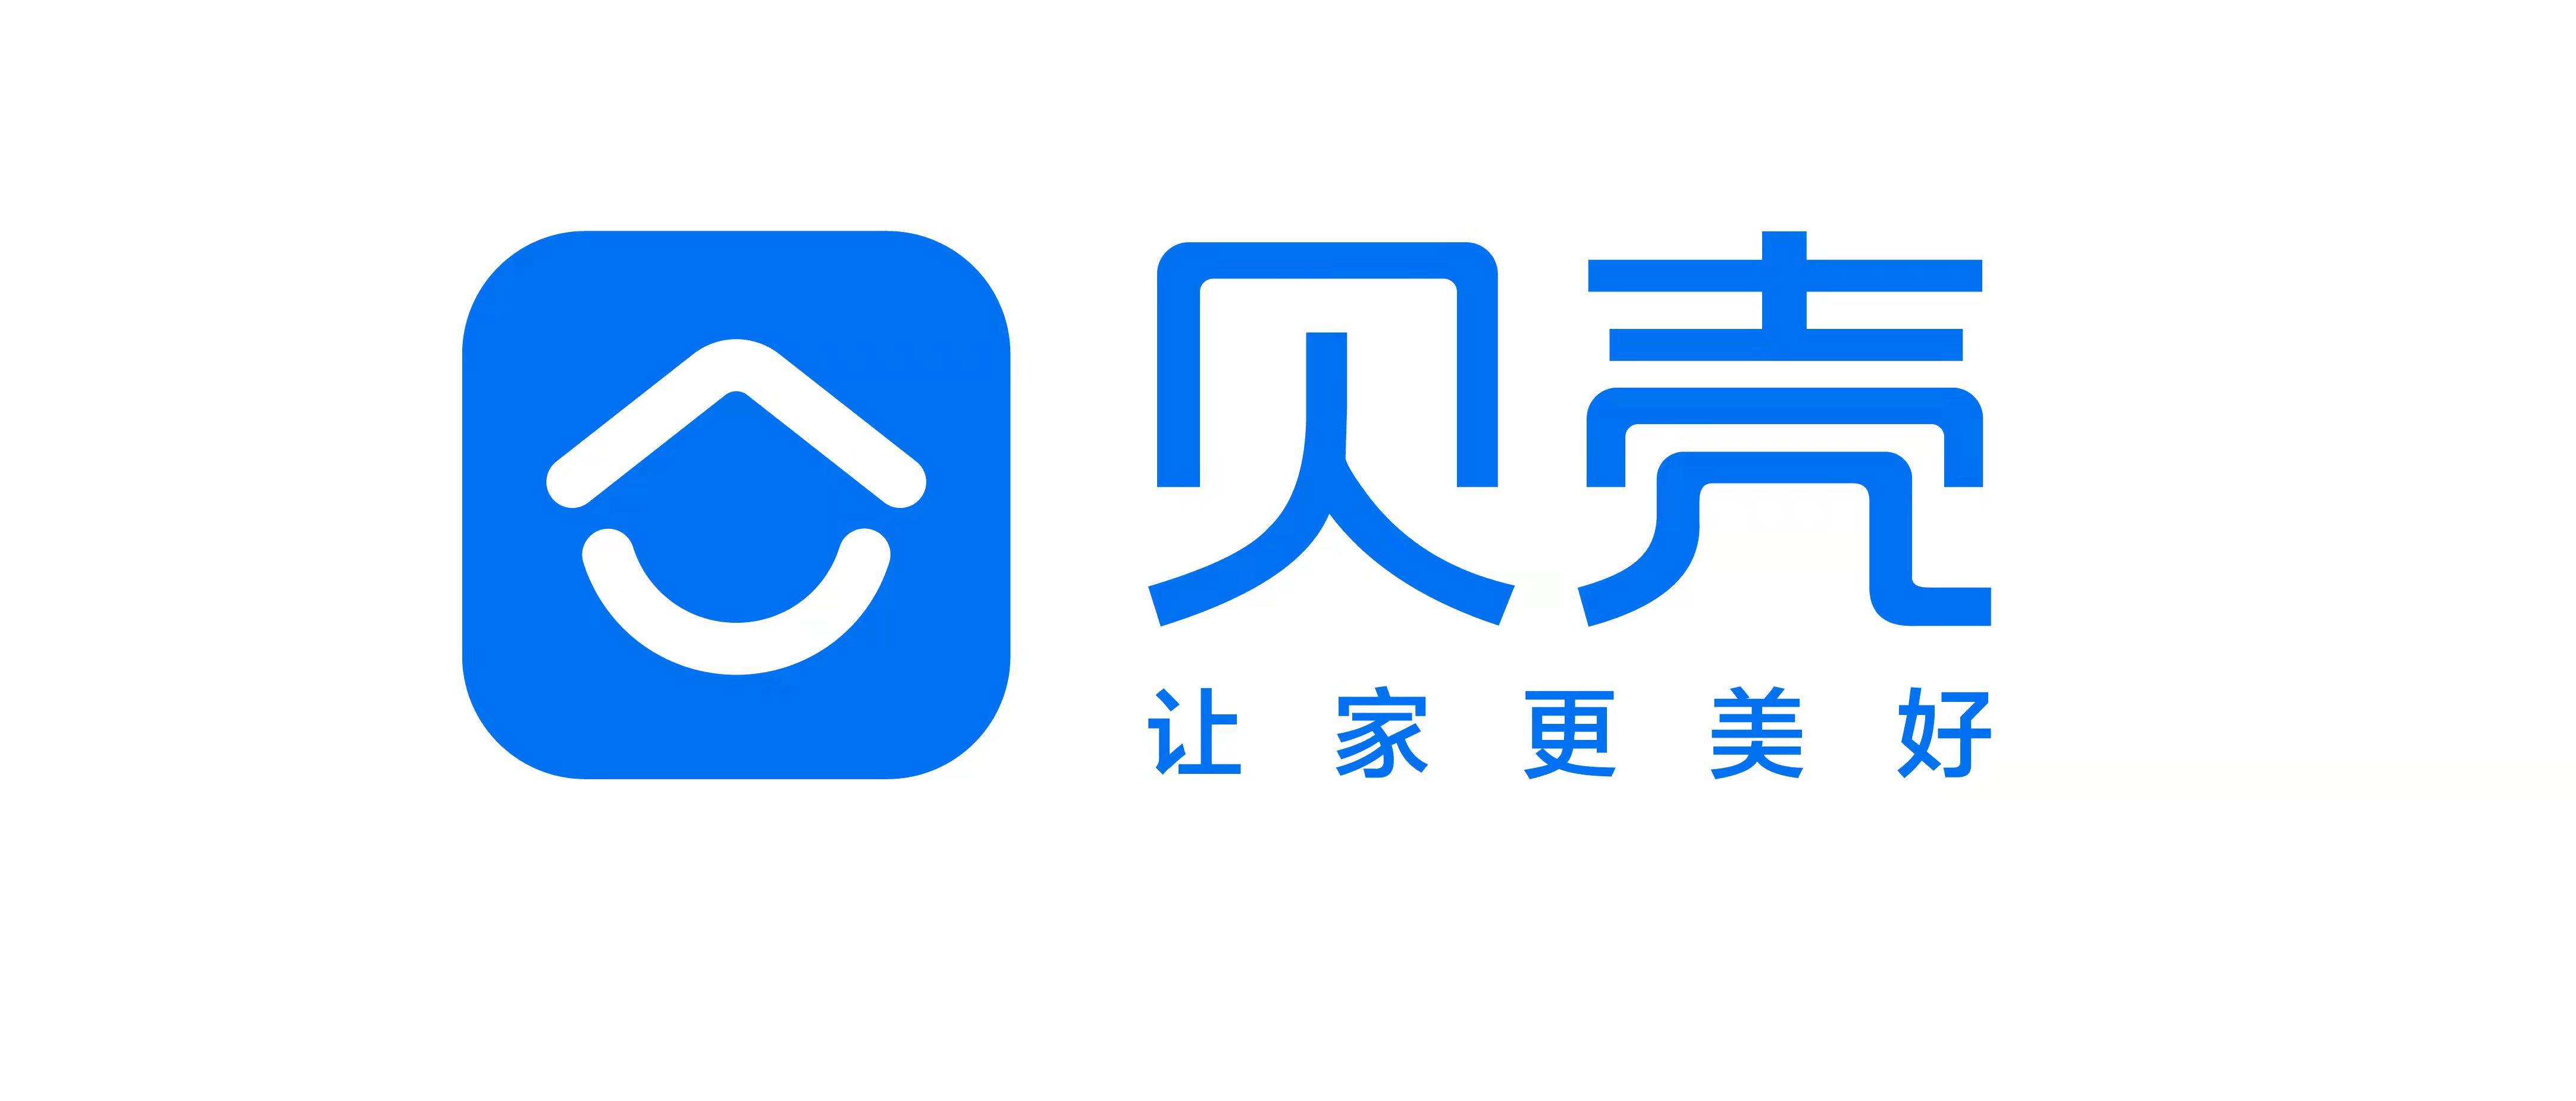 中国白银logo图片